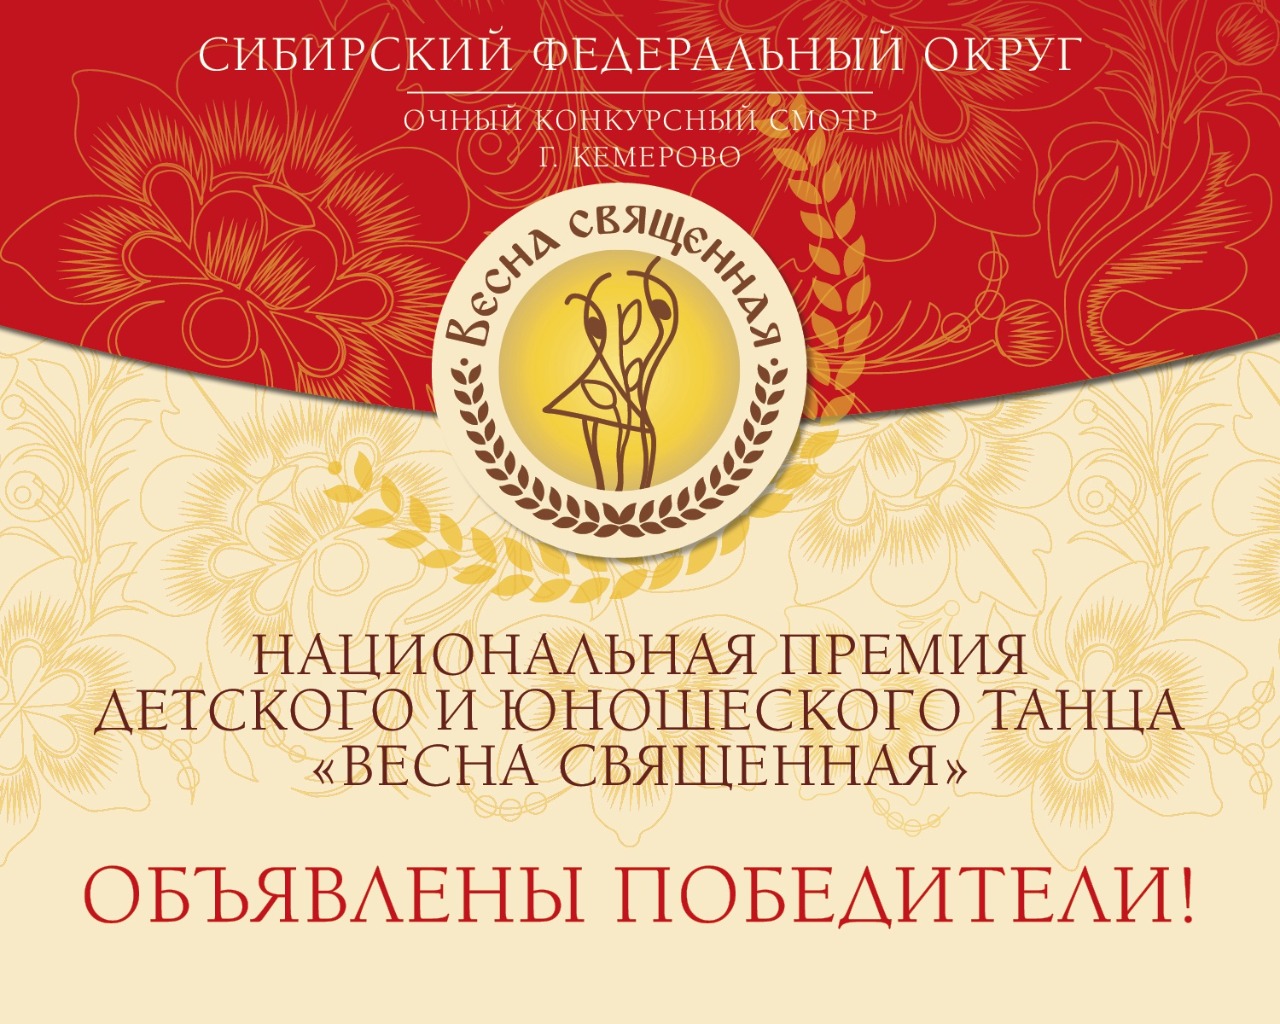 Результаты очного смотра – конкурса Сибирского Федерального округа